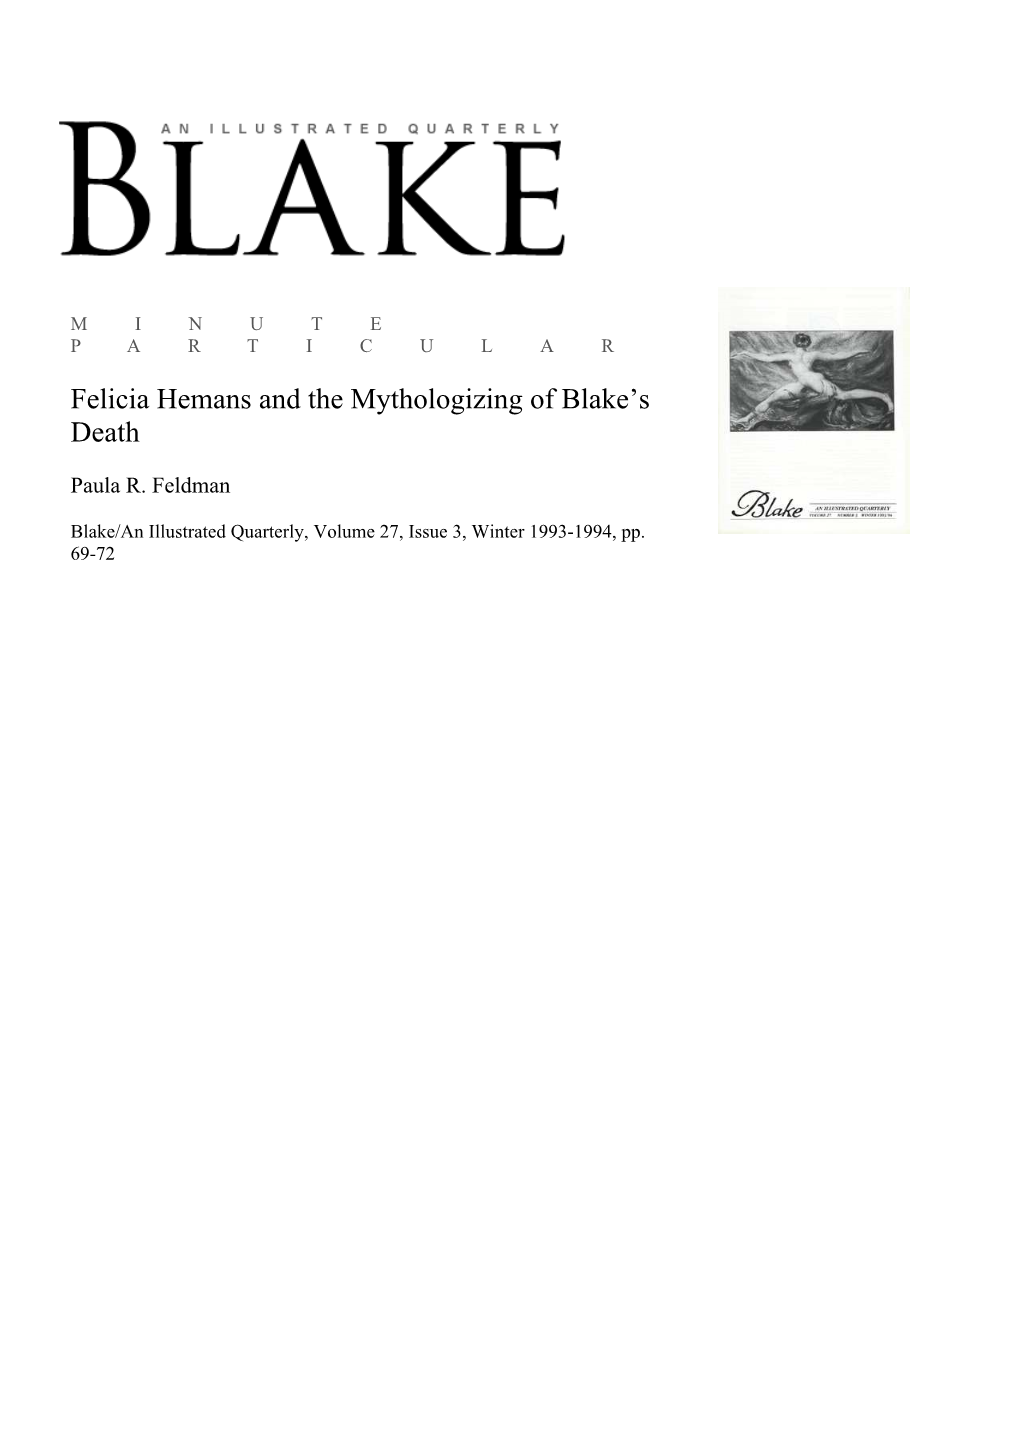 Felicia Hemans and the Mythologizing of Blake's Death